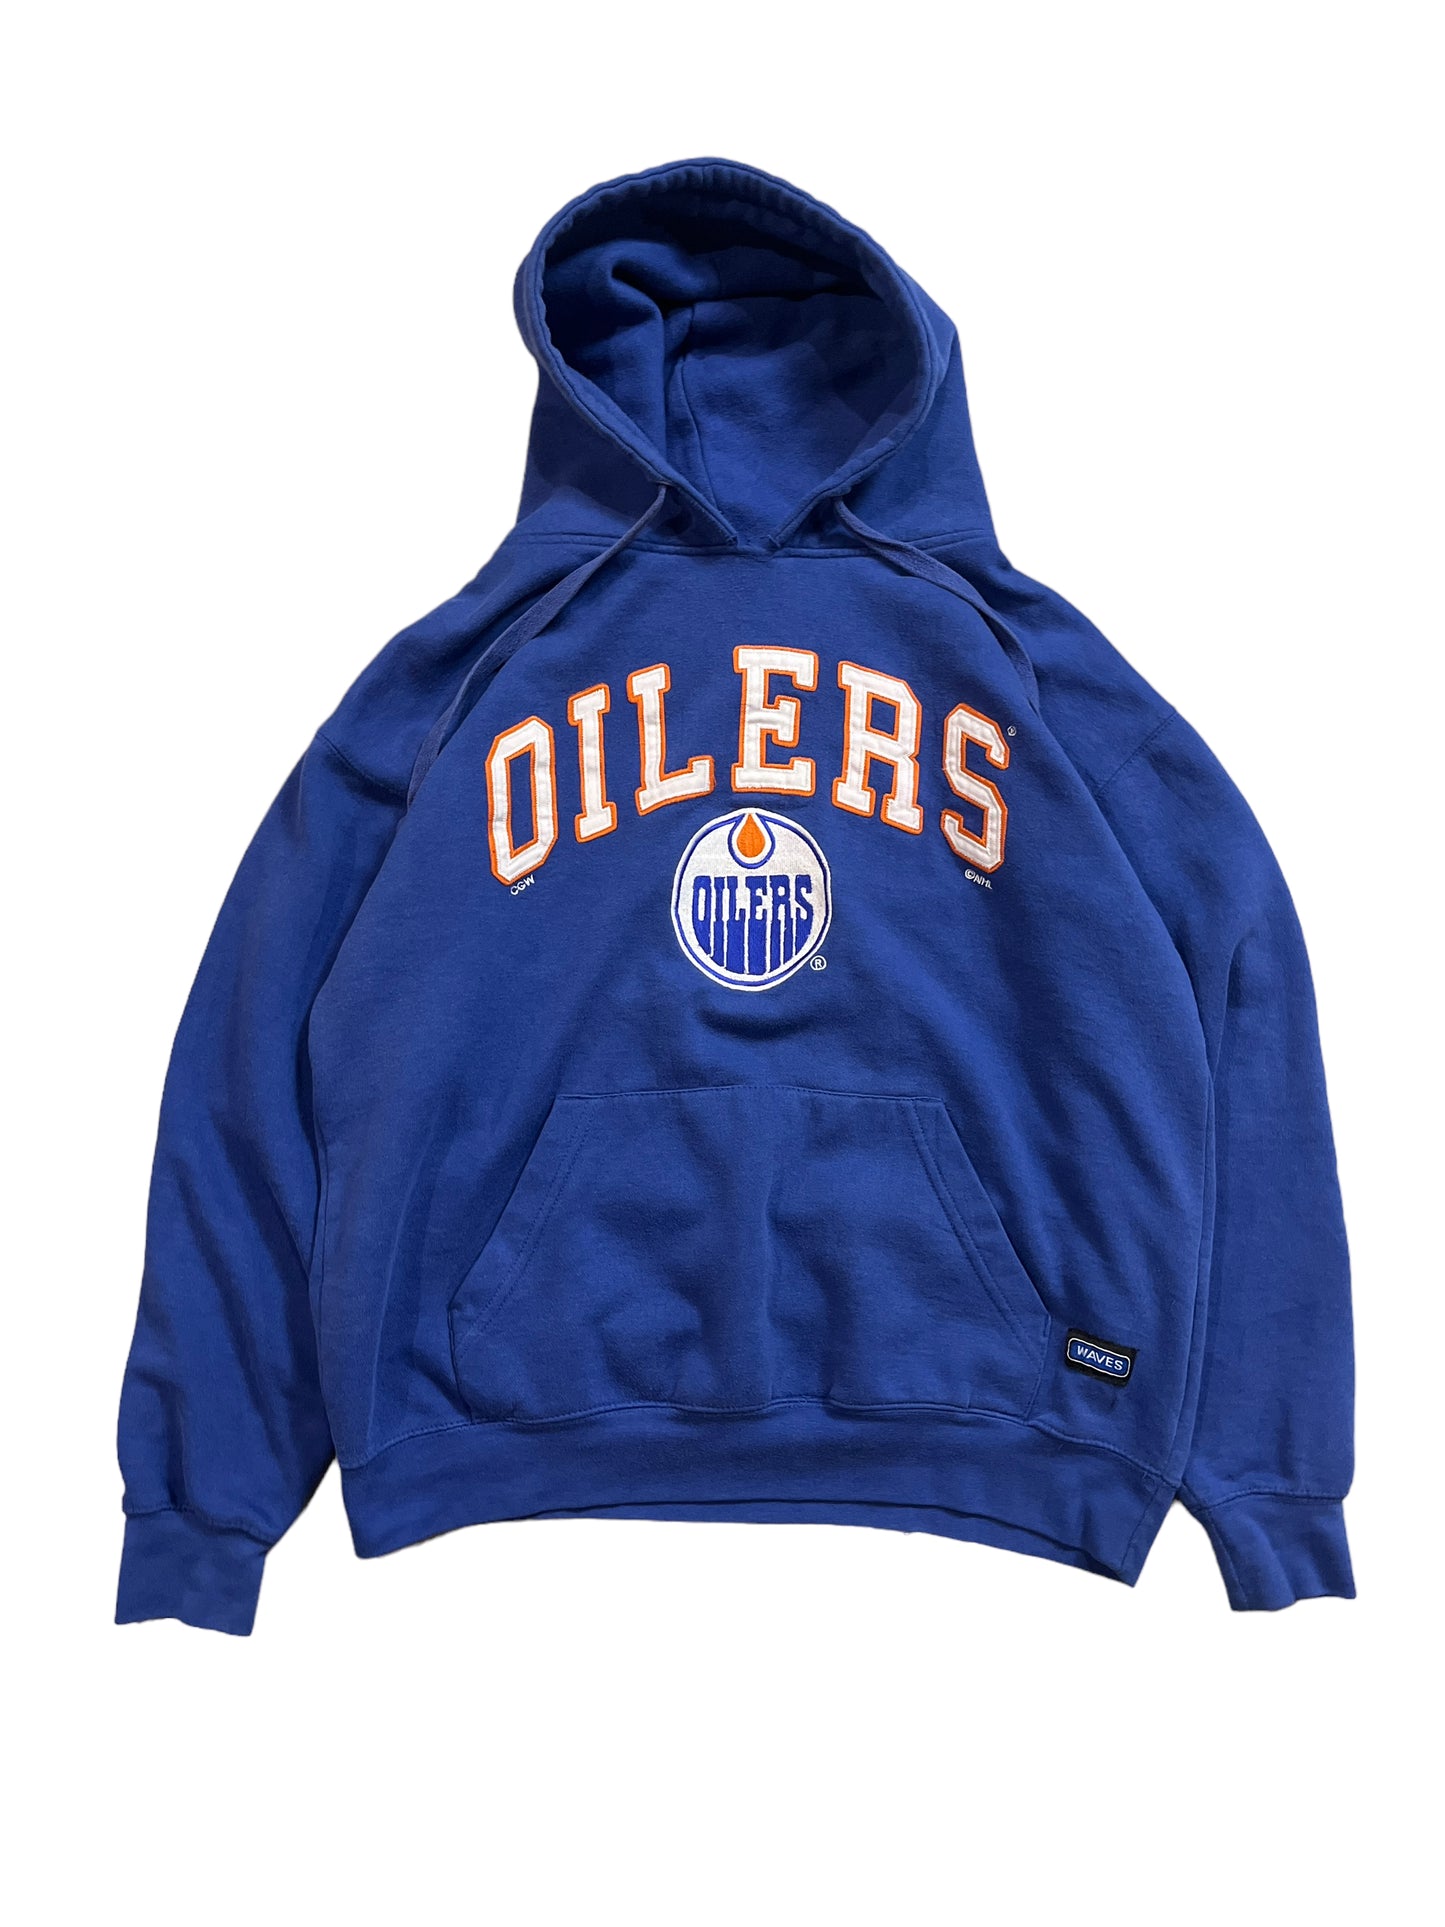 Vintage Edmonton Oilers Hoodie